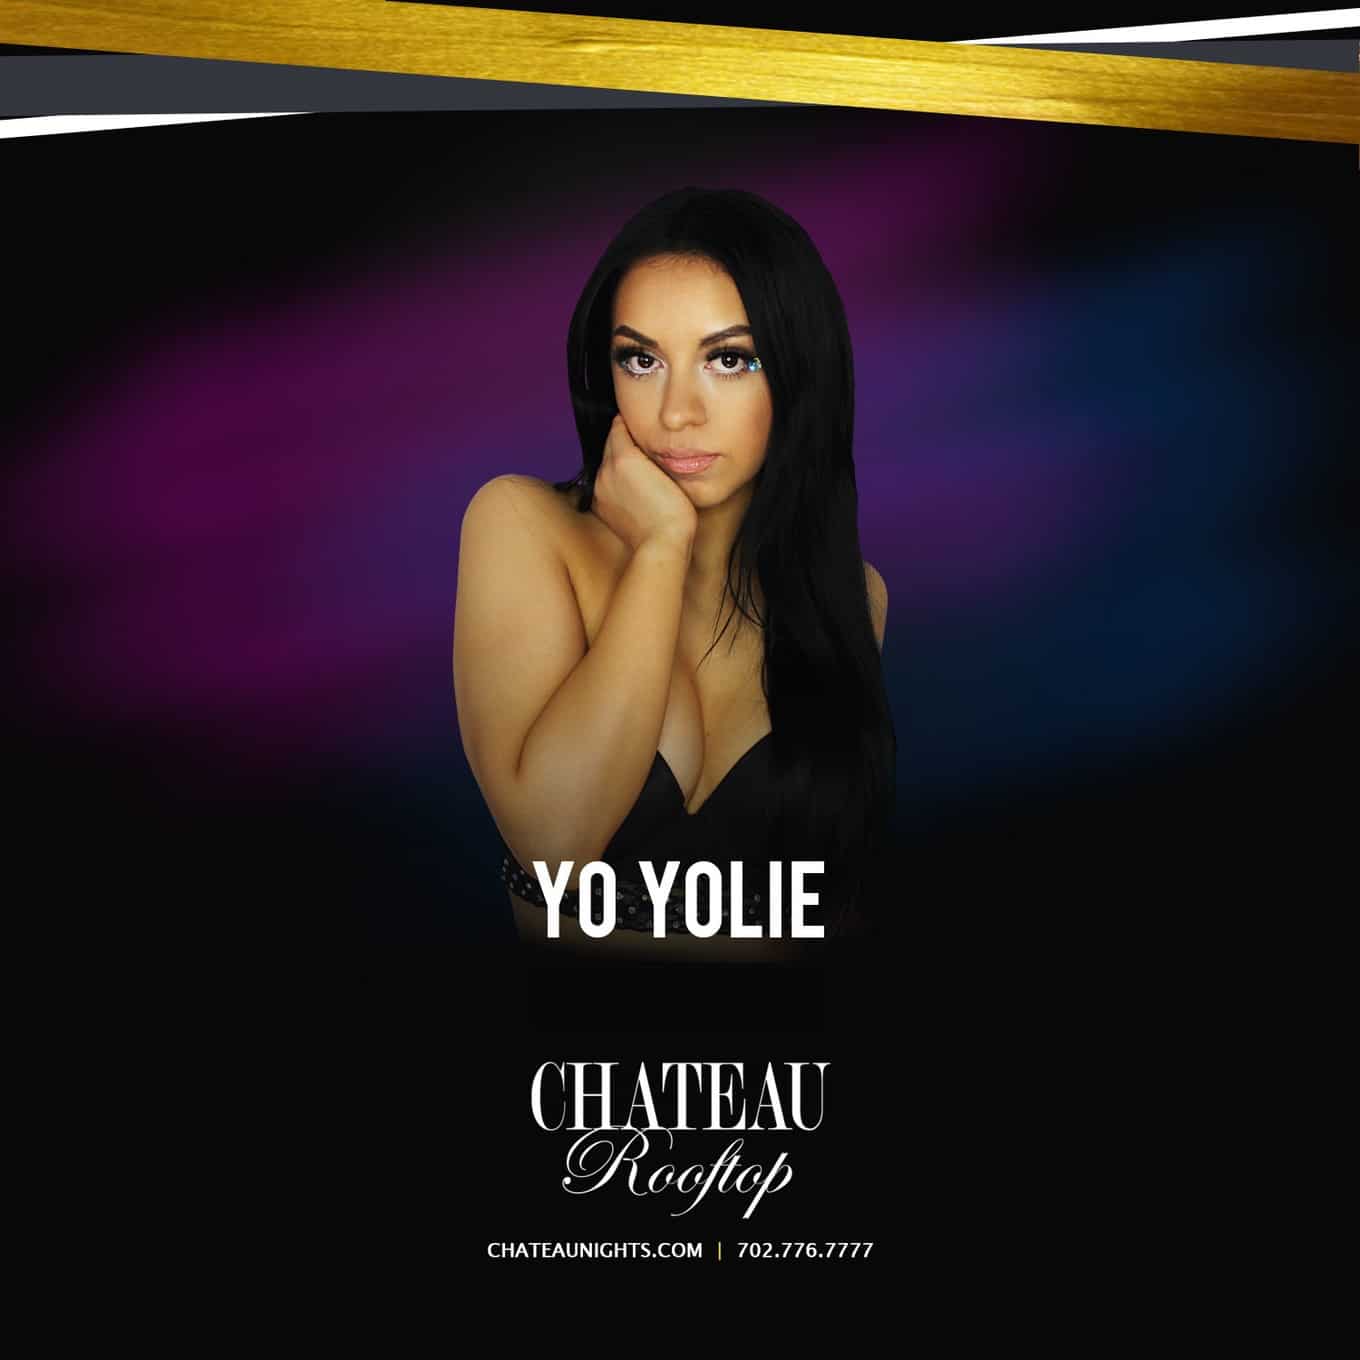 Yo Yolie at Chateau